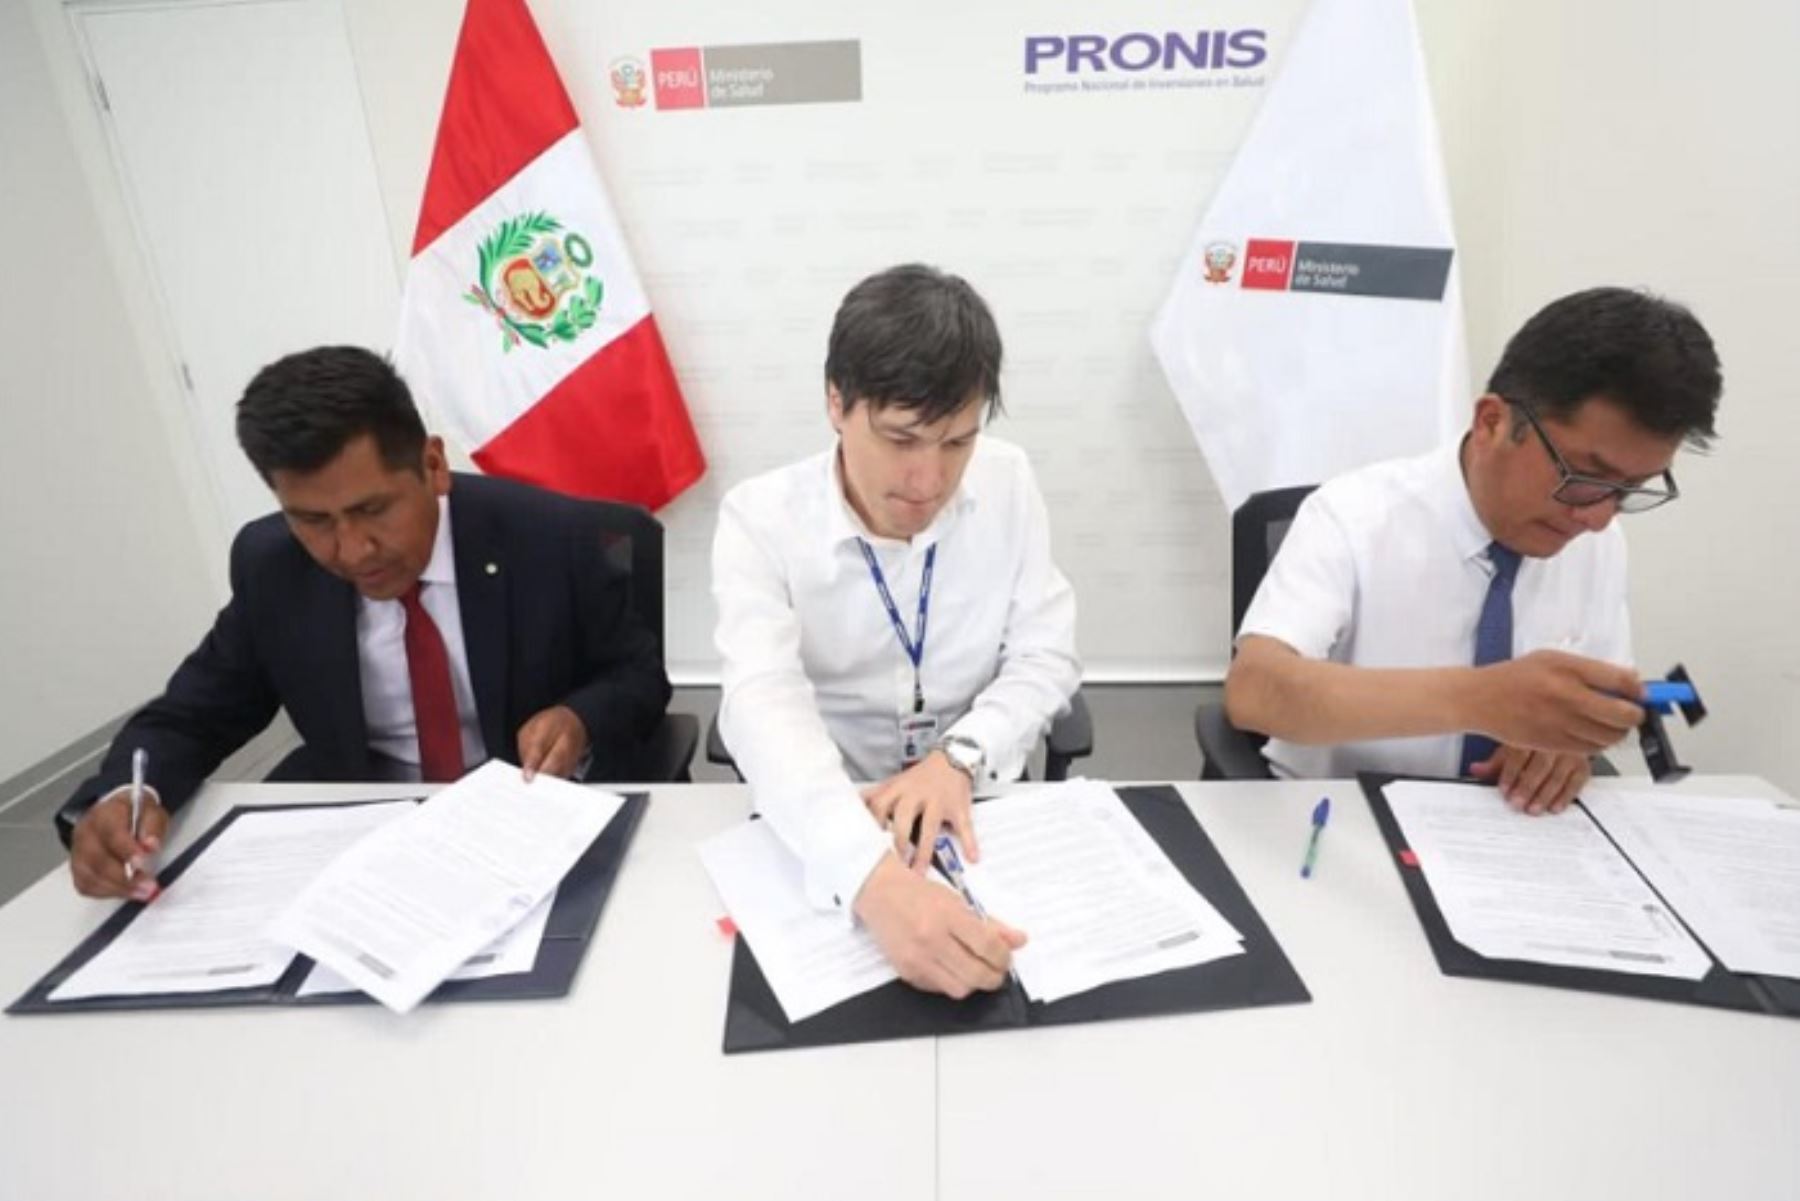 Firmaron el convenio el coordinador general del Pronis, Juan Hurtado Zamora; gobernador regional de Puno, Richard Hancco Soncco; y del alcalde provincial de Yunguyo, Fernando Coya Valdivia.